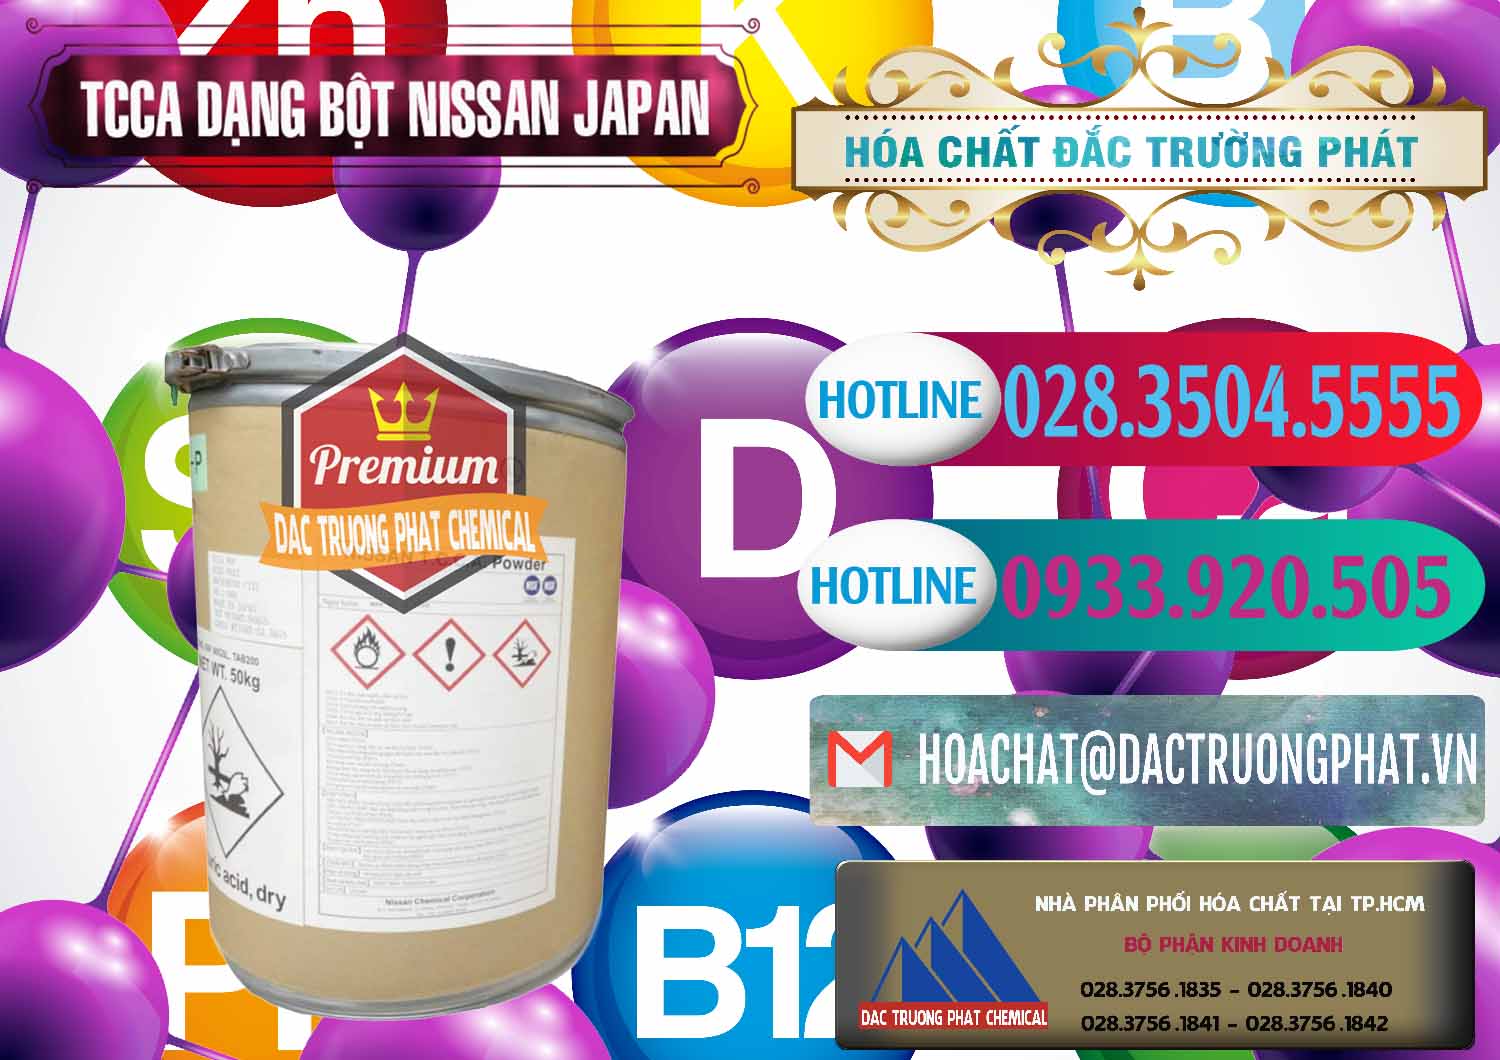 Chuyên cung cấp - bán TCCA - Acid Trichloroisocyanuric 90% Dạng Bột Nissan Nhật Bản Japan - 0375 - Nơi cung cấp ( nhập khẩu ) hóa chất tại TP.HCM - truongphat.vn